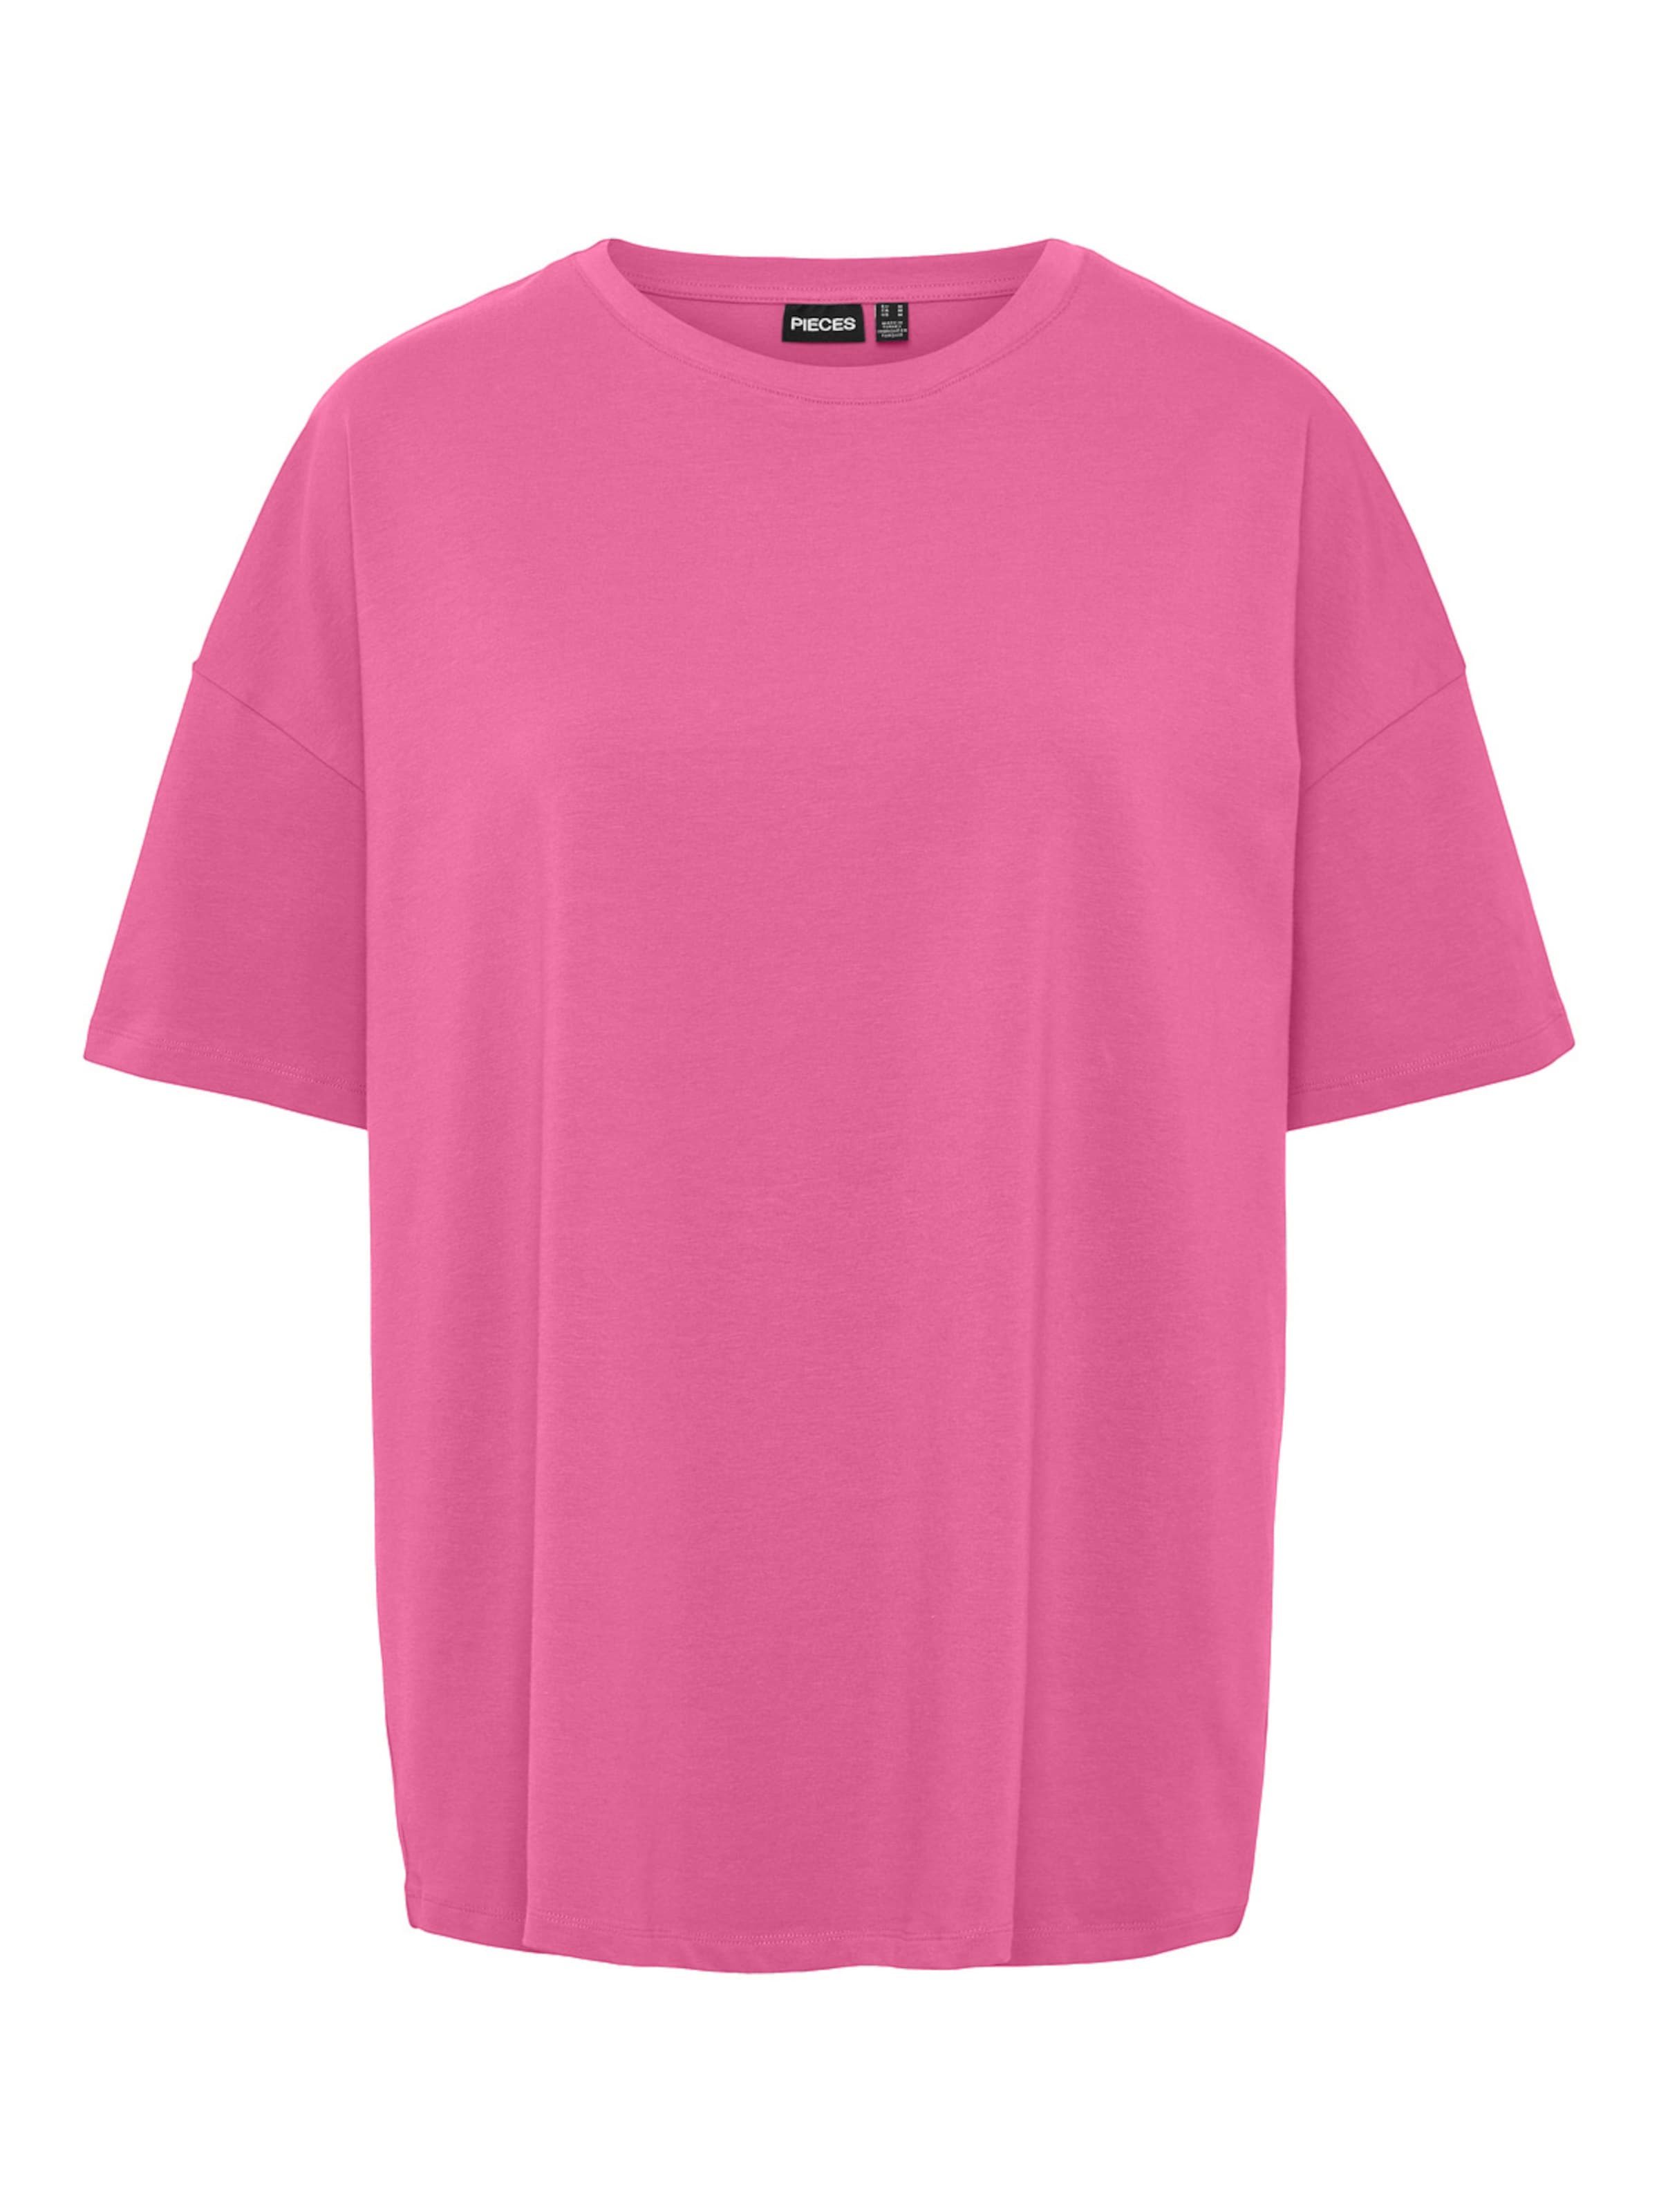 PIECES T-Shirt Mariski in Pink 